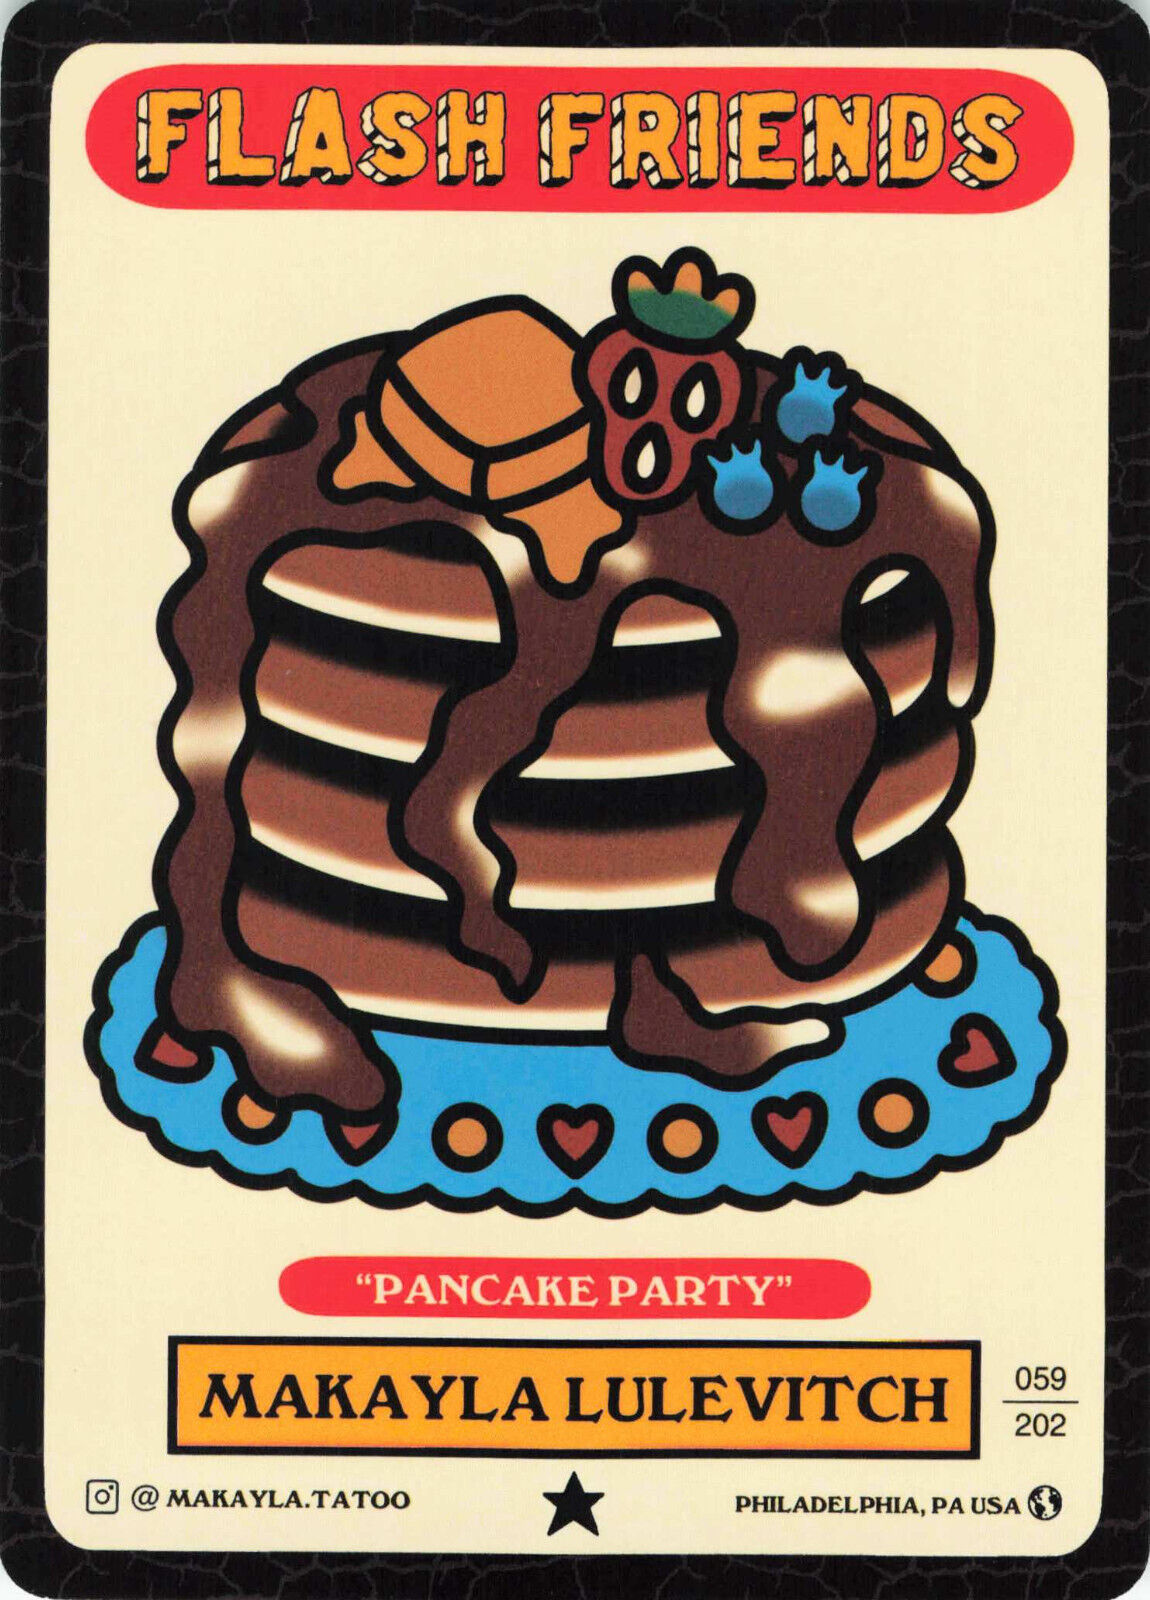 Makayla Lulevitch Pancake Party Tattoo Crocodile Jacksons Flash Friends Card PA